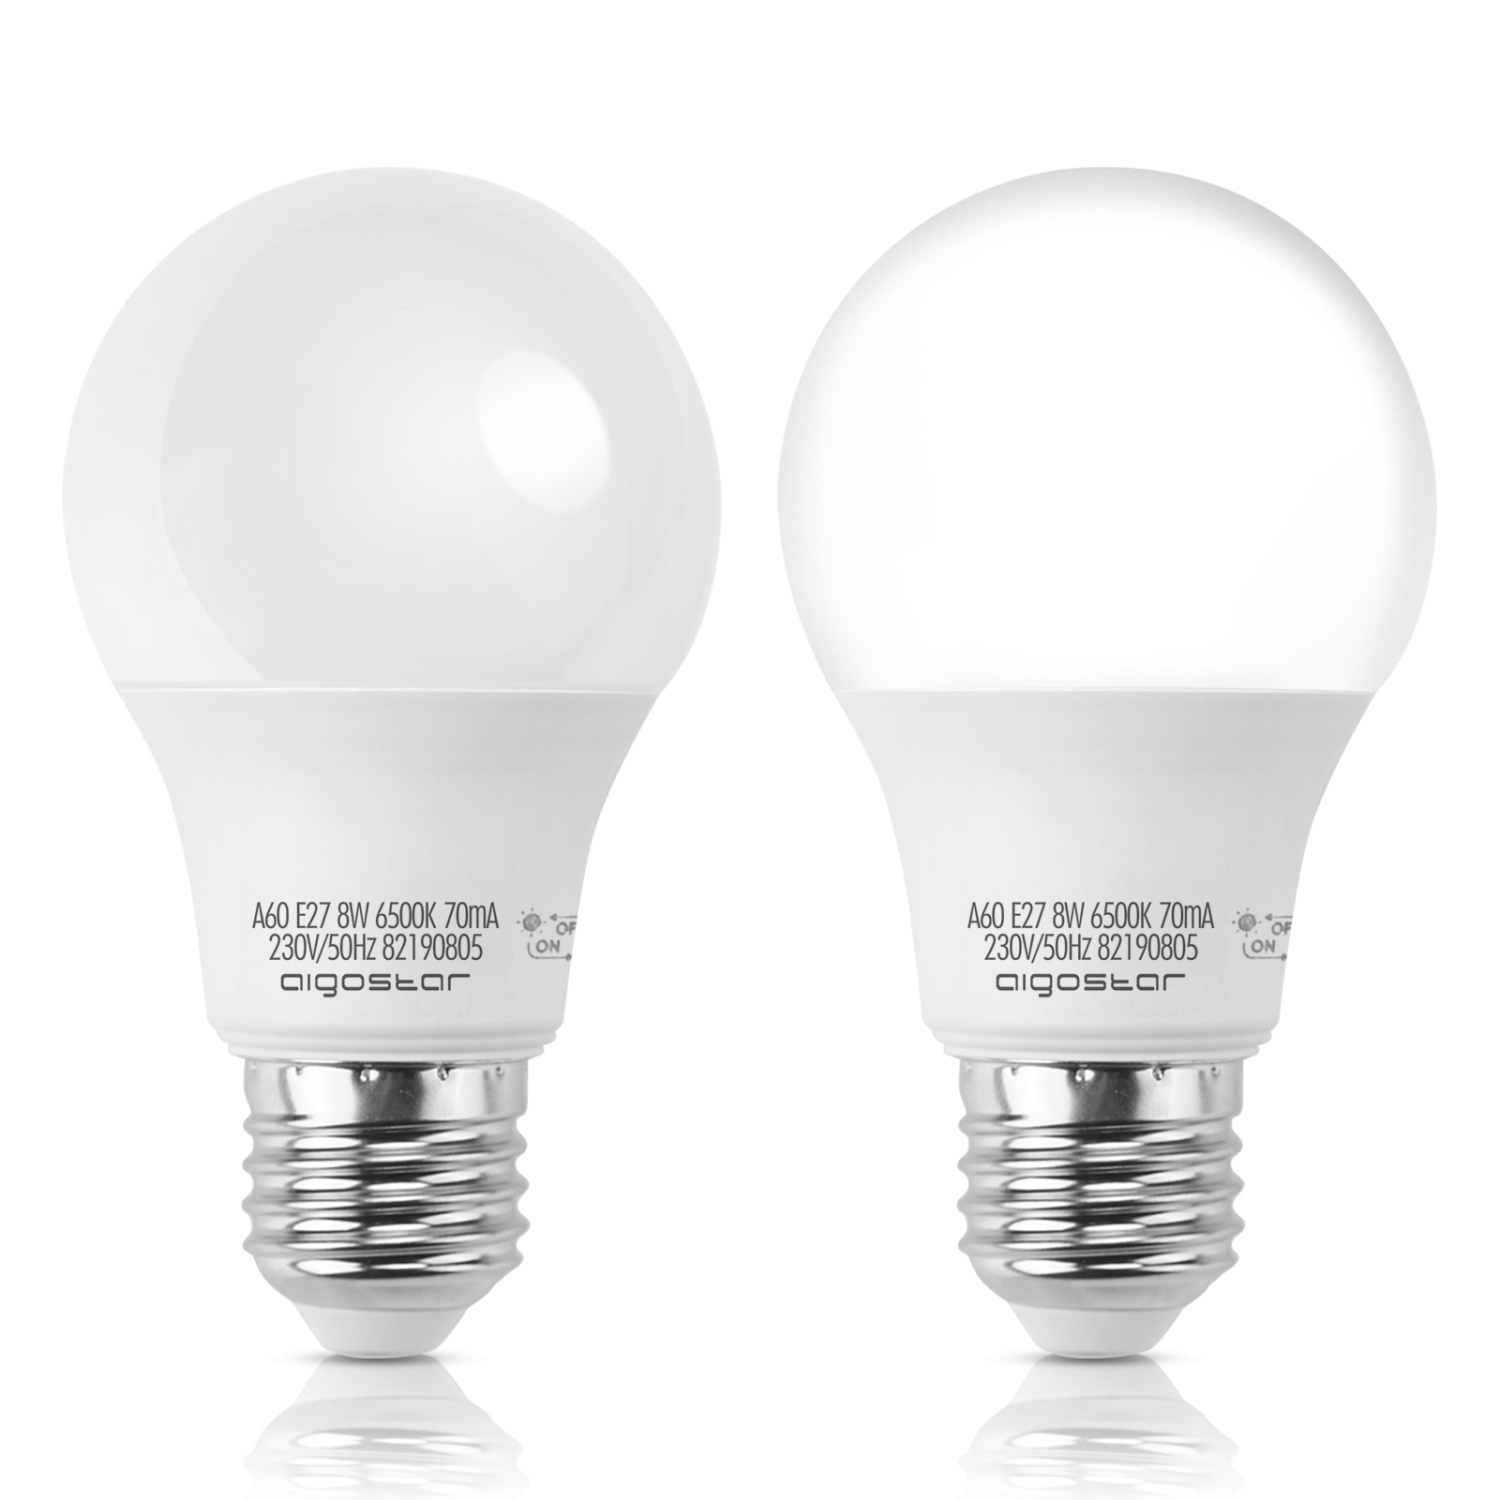 LED Lampe mit Tageslichtsensor, E27 Lichtsensor Glühbirne, 8W (50W Equivalent) Dämmerungssensor Leuchtmittel,  kaltweiss 6500K, Automatische On/Off Led Glühbirne für Korridor Garage Garten, 2 Stück